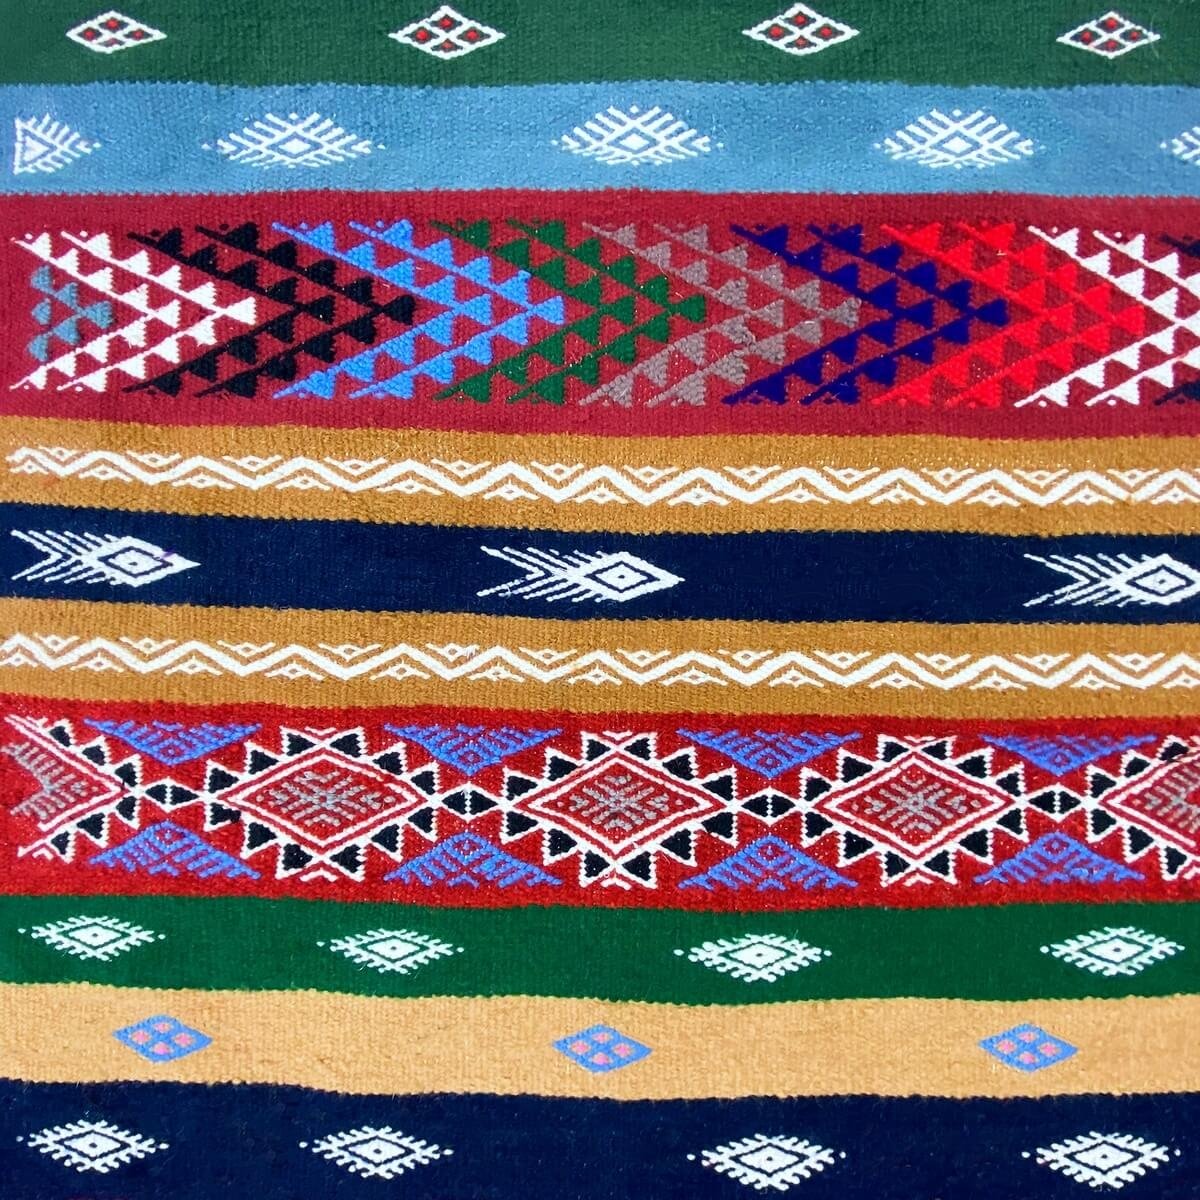 Tapete berbere Tapete Kilim longo Fhal 70x255 Multicor (Tecidos à mão, Lã) Tapete tunisiano kilim, estilo marroquino. Tapete ret